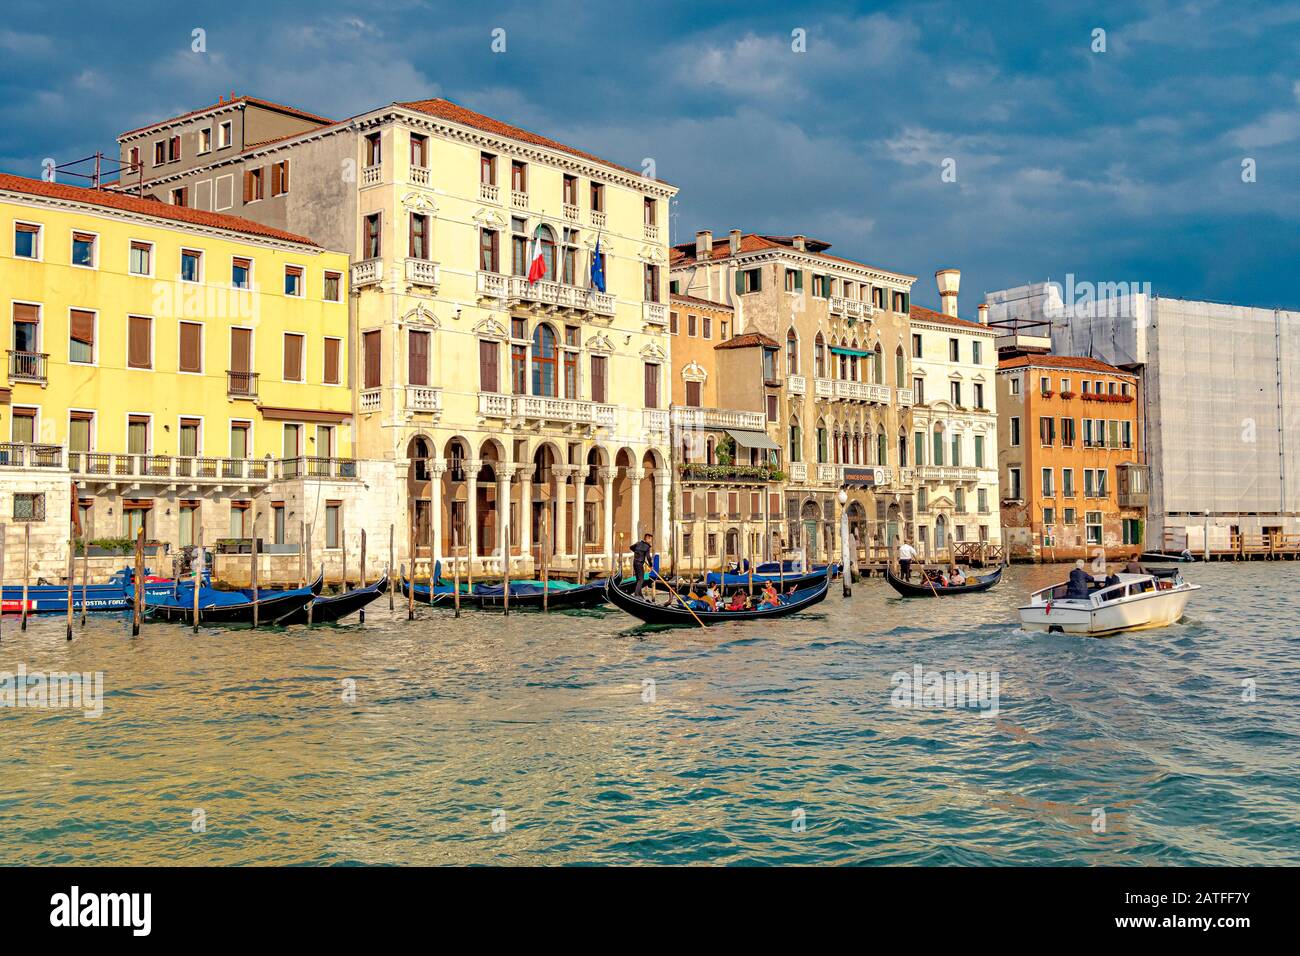 Les gondoles et un bateau-taxi sur Le grand Canal, car la lumière du soleil de la fin de l'après-midi reflète les bâtiments baroques le long du Grand Canal à Venise, en Italie Banque D'Images